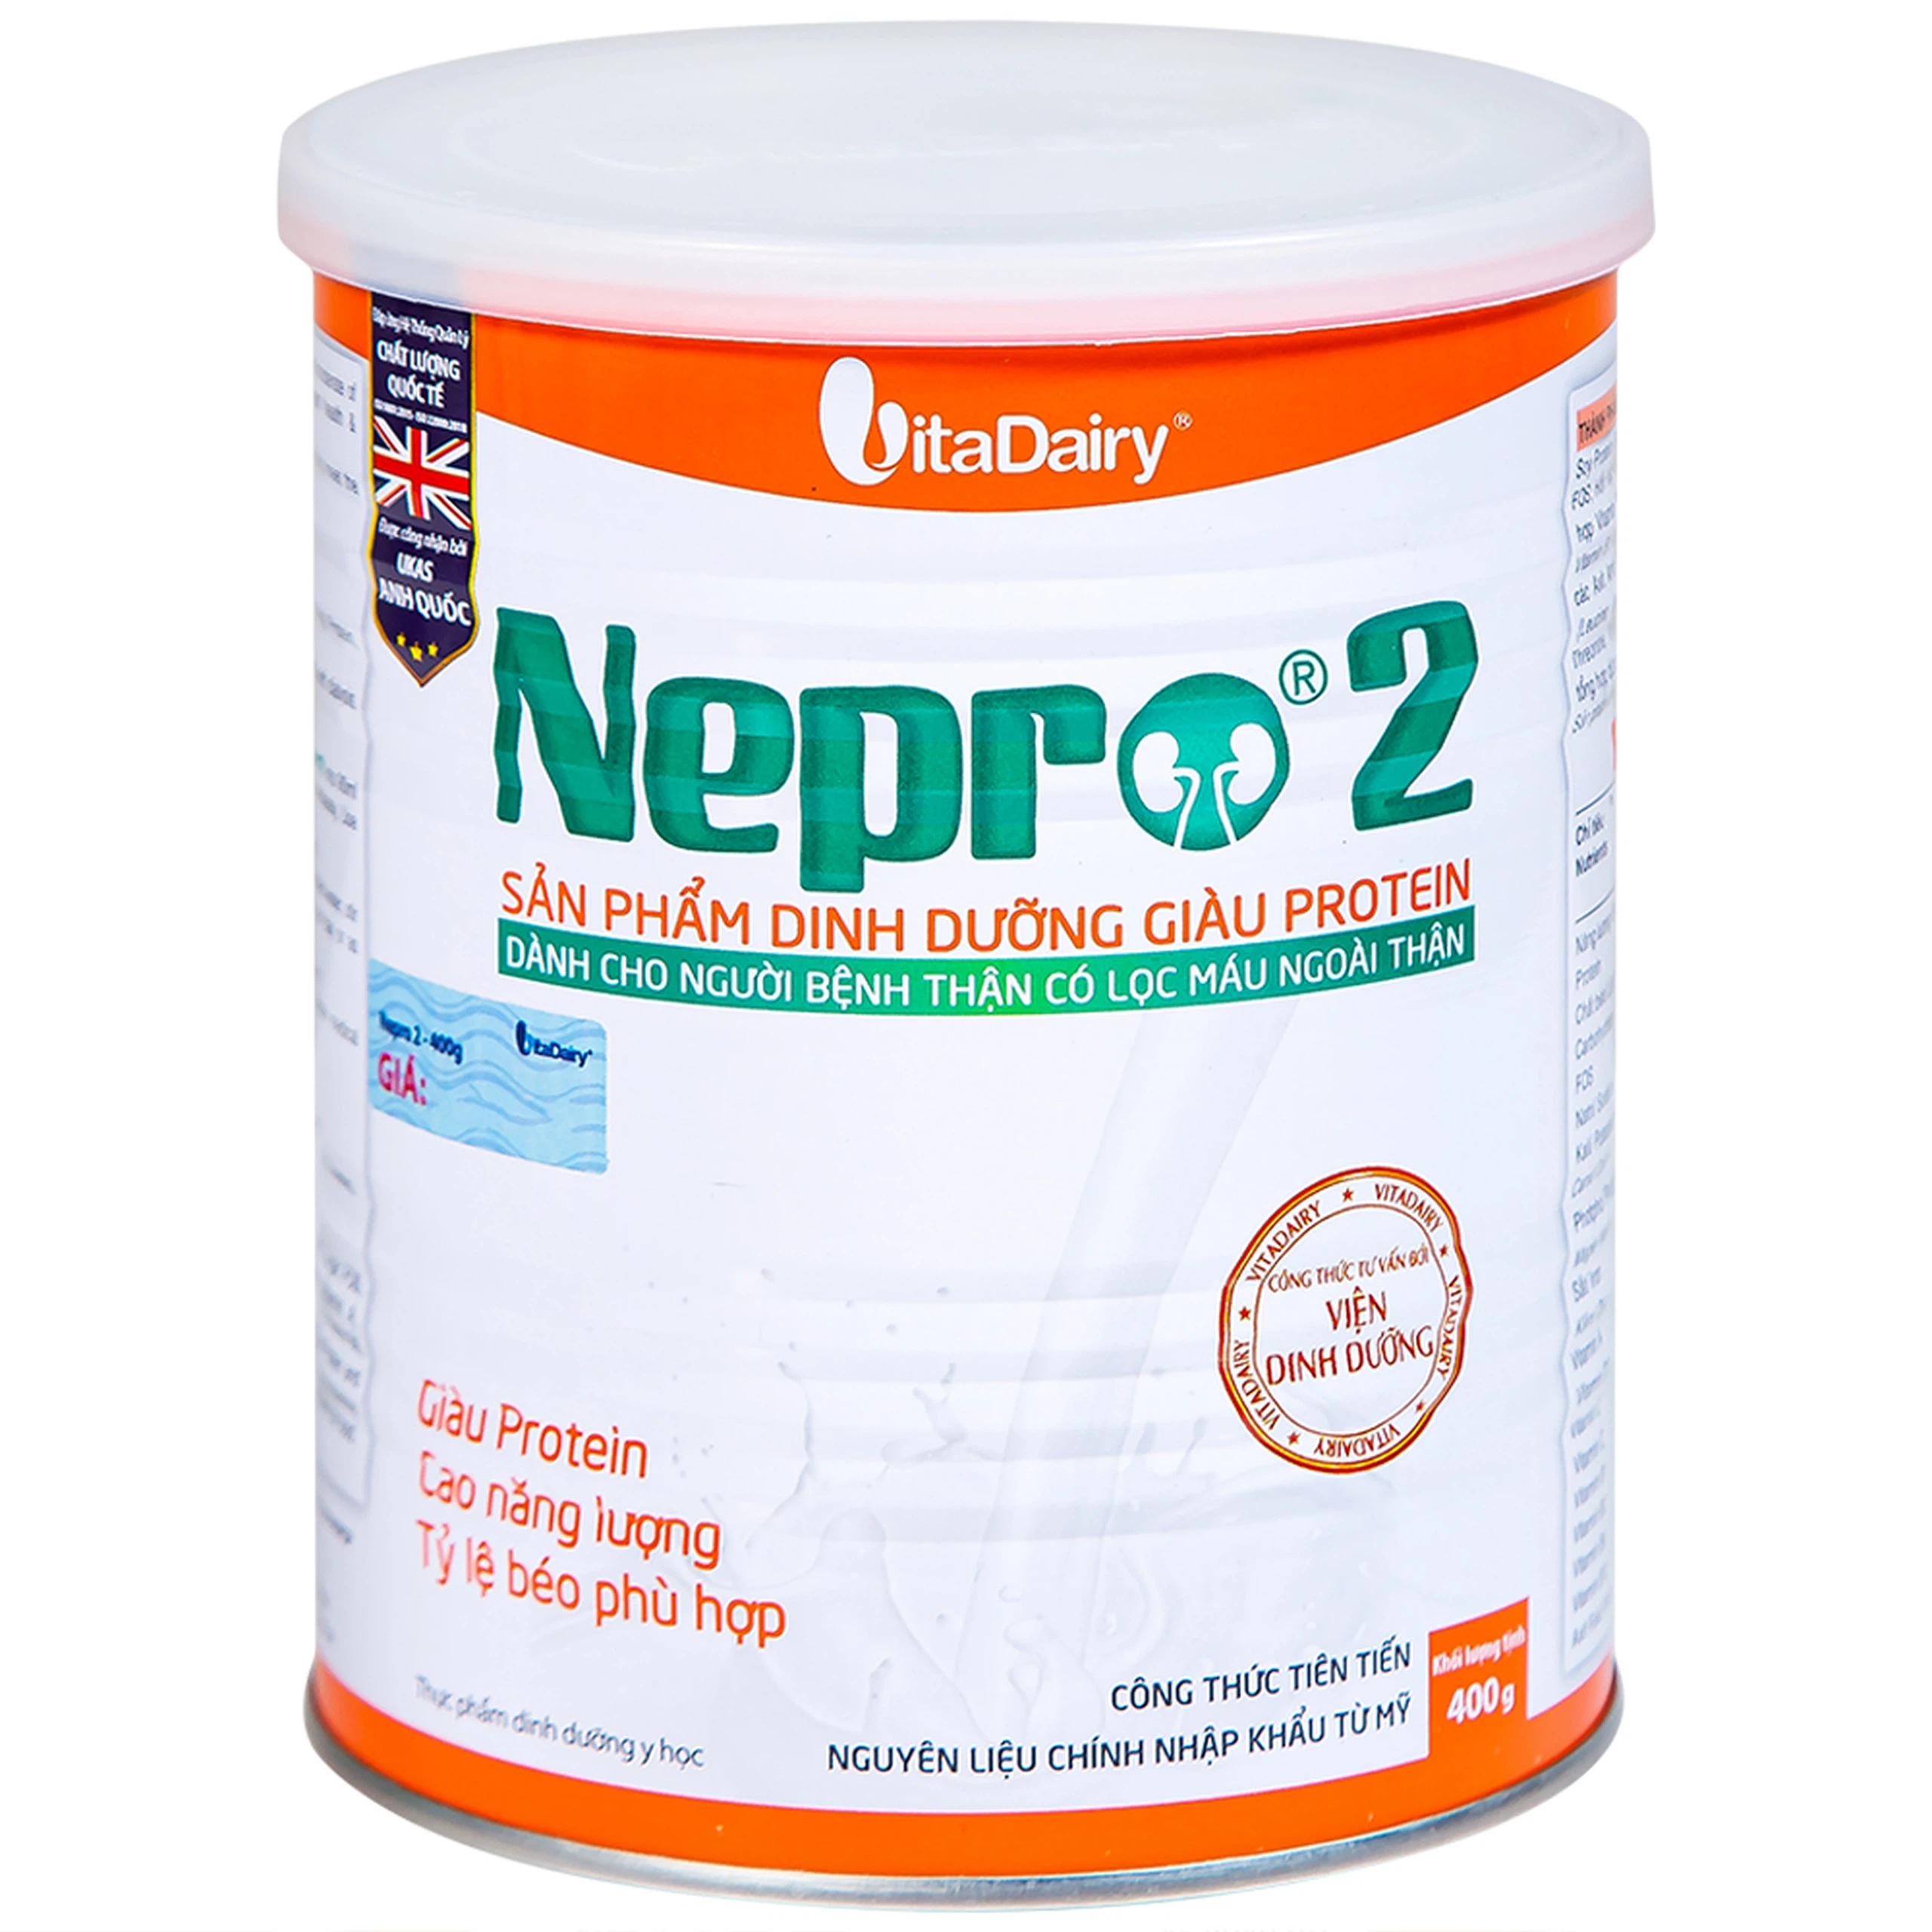 Sữa bột Nepro 2 VitaDairy bổ sung dinh dưỡng giàu protein dành cho người bệnh thận (400g)